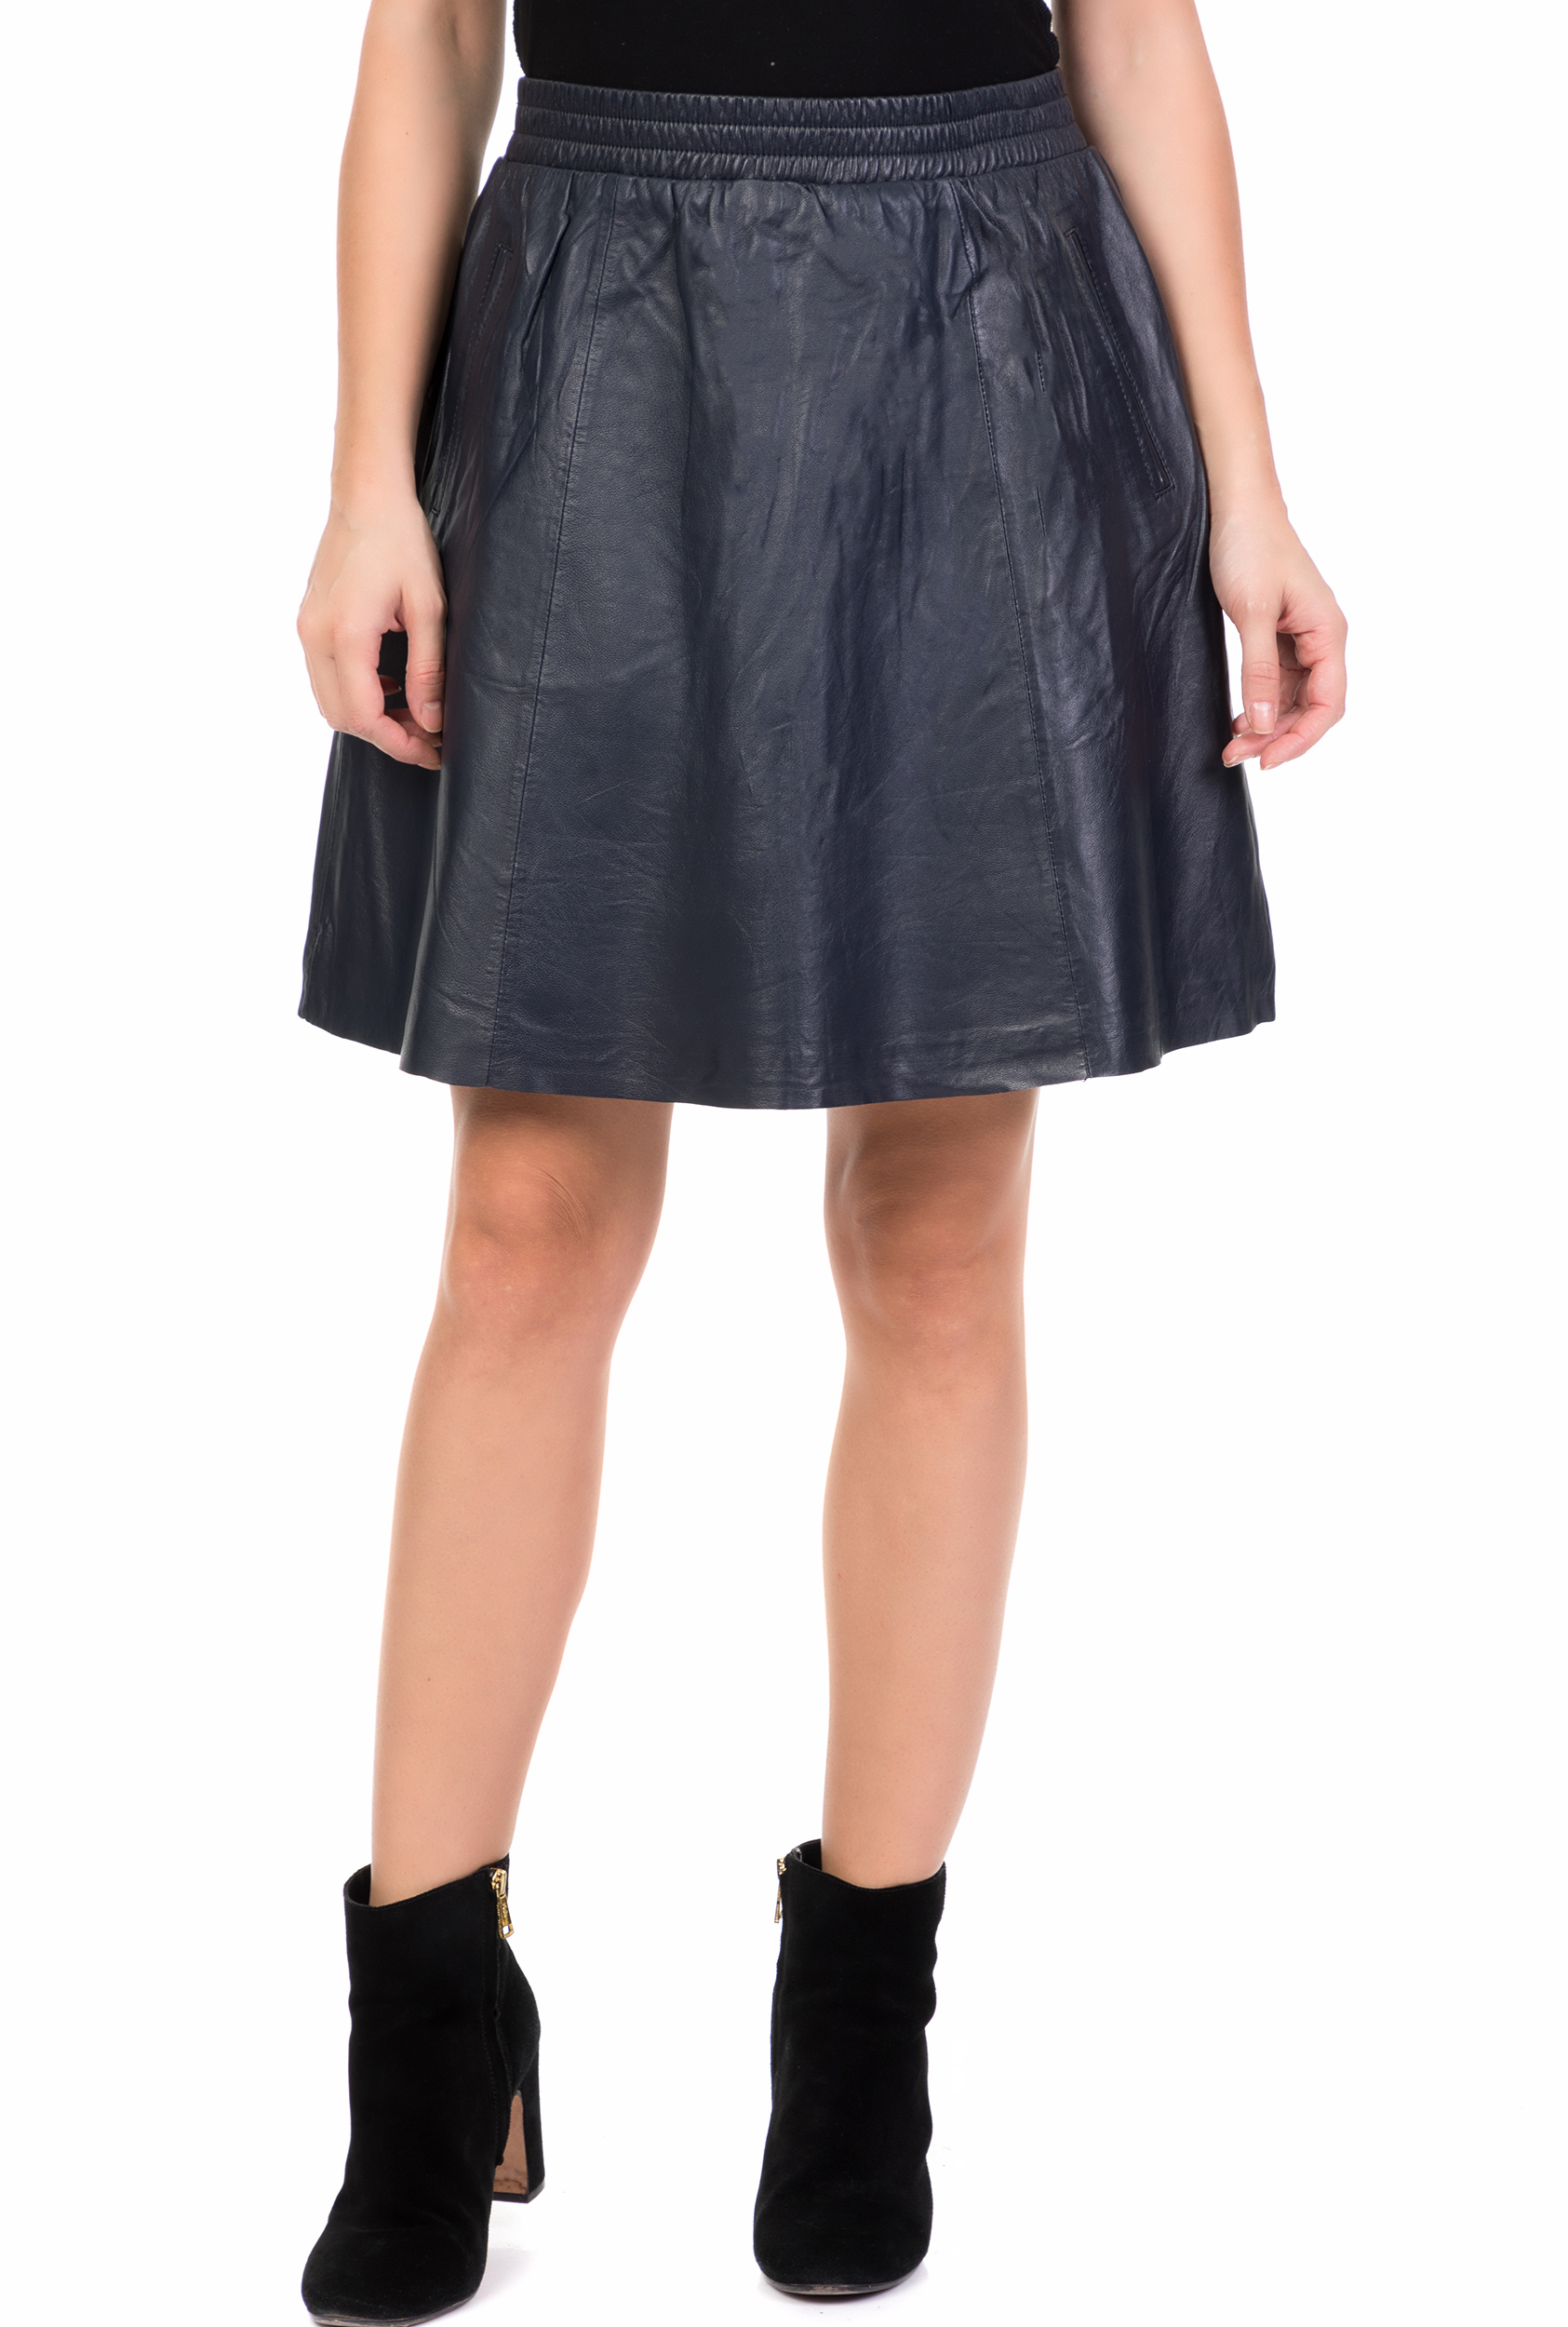 Γυναικεία/Ρούχα/Φούστες/Μίνι NUMPH - Γυναικεία δερμάτινη μίνι φούστα FILICIDAD NUMPH μαύρη